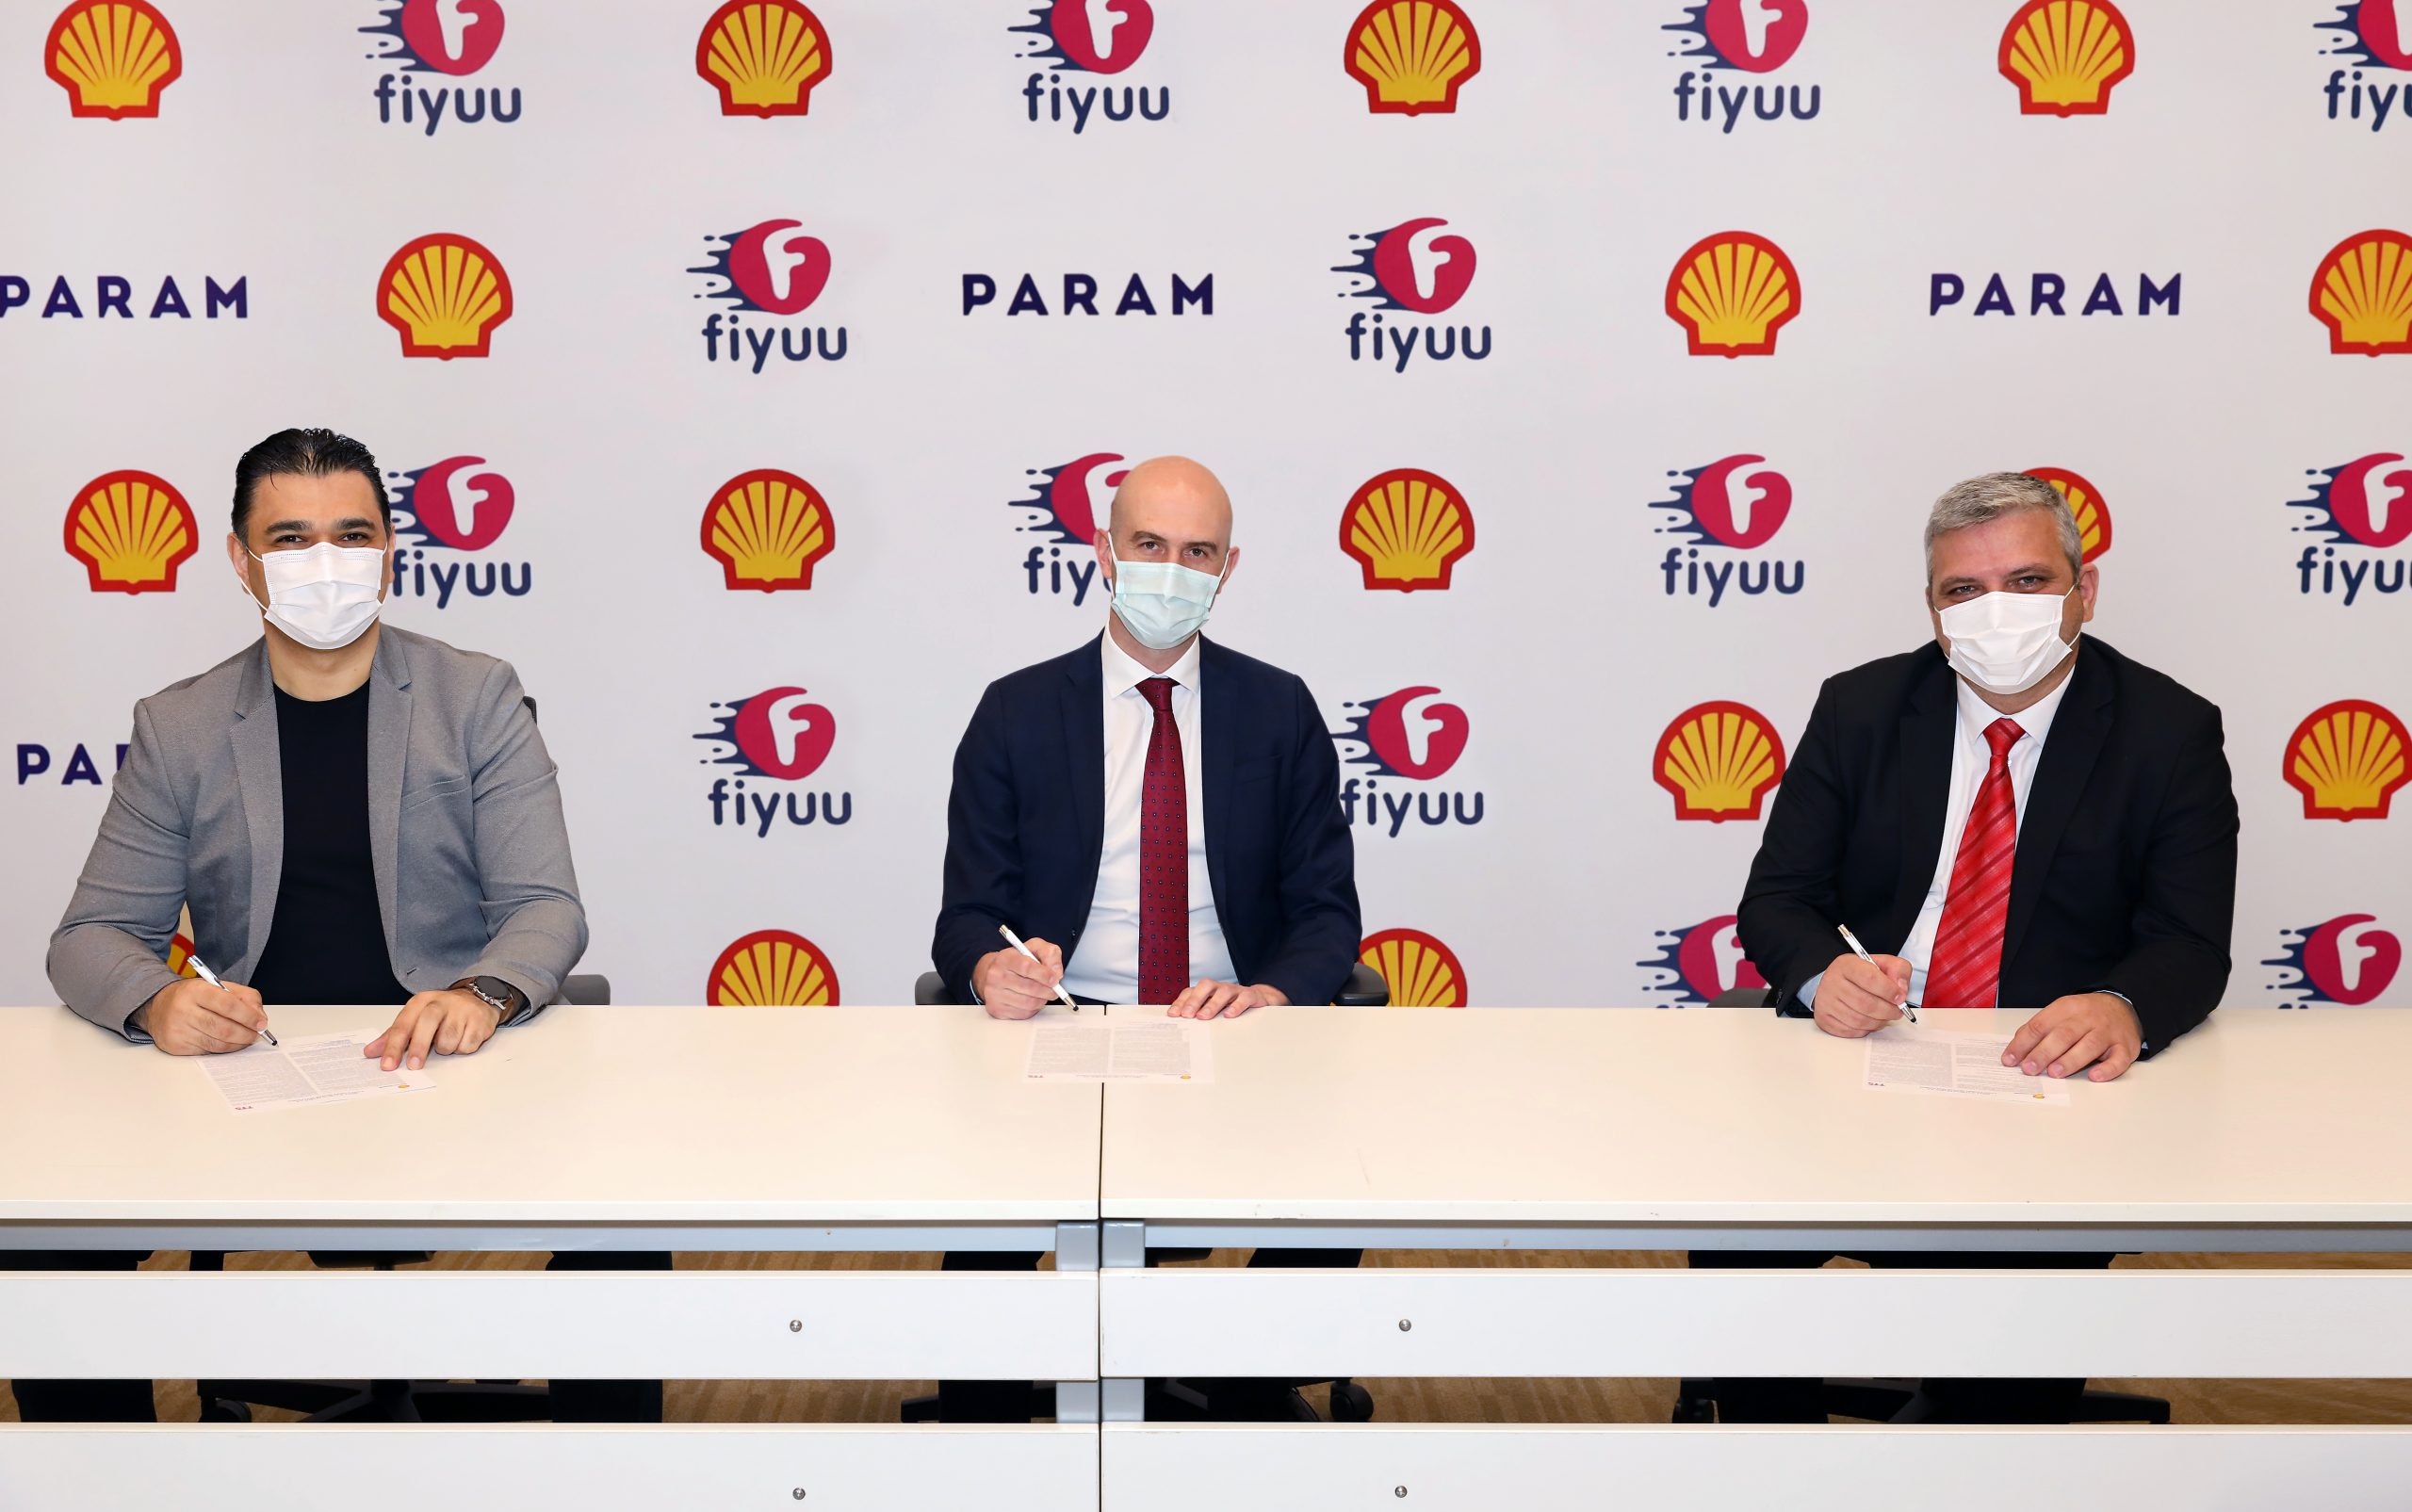 Shell & Turcas ile TFI TAB Gıda’nın hızlı teslimat platformu fiyuu’dan ödemeleri kolaylaştıran iş birliği